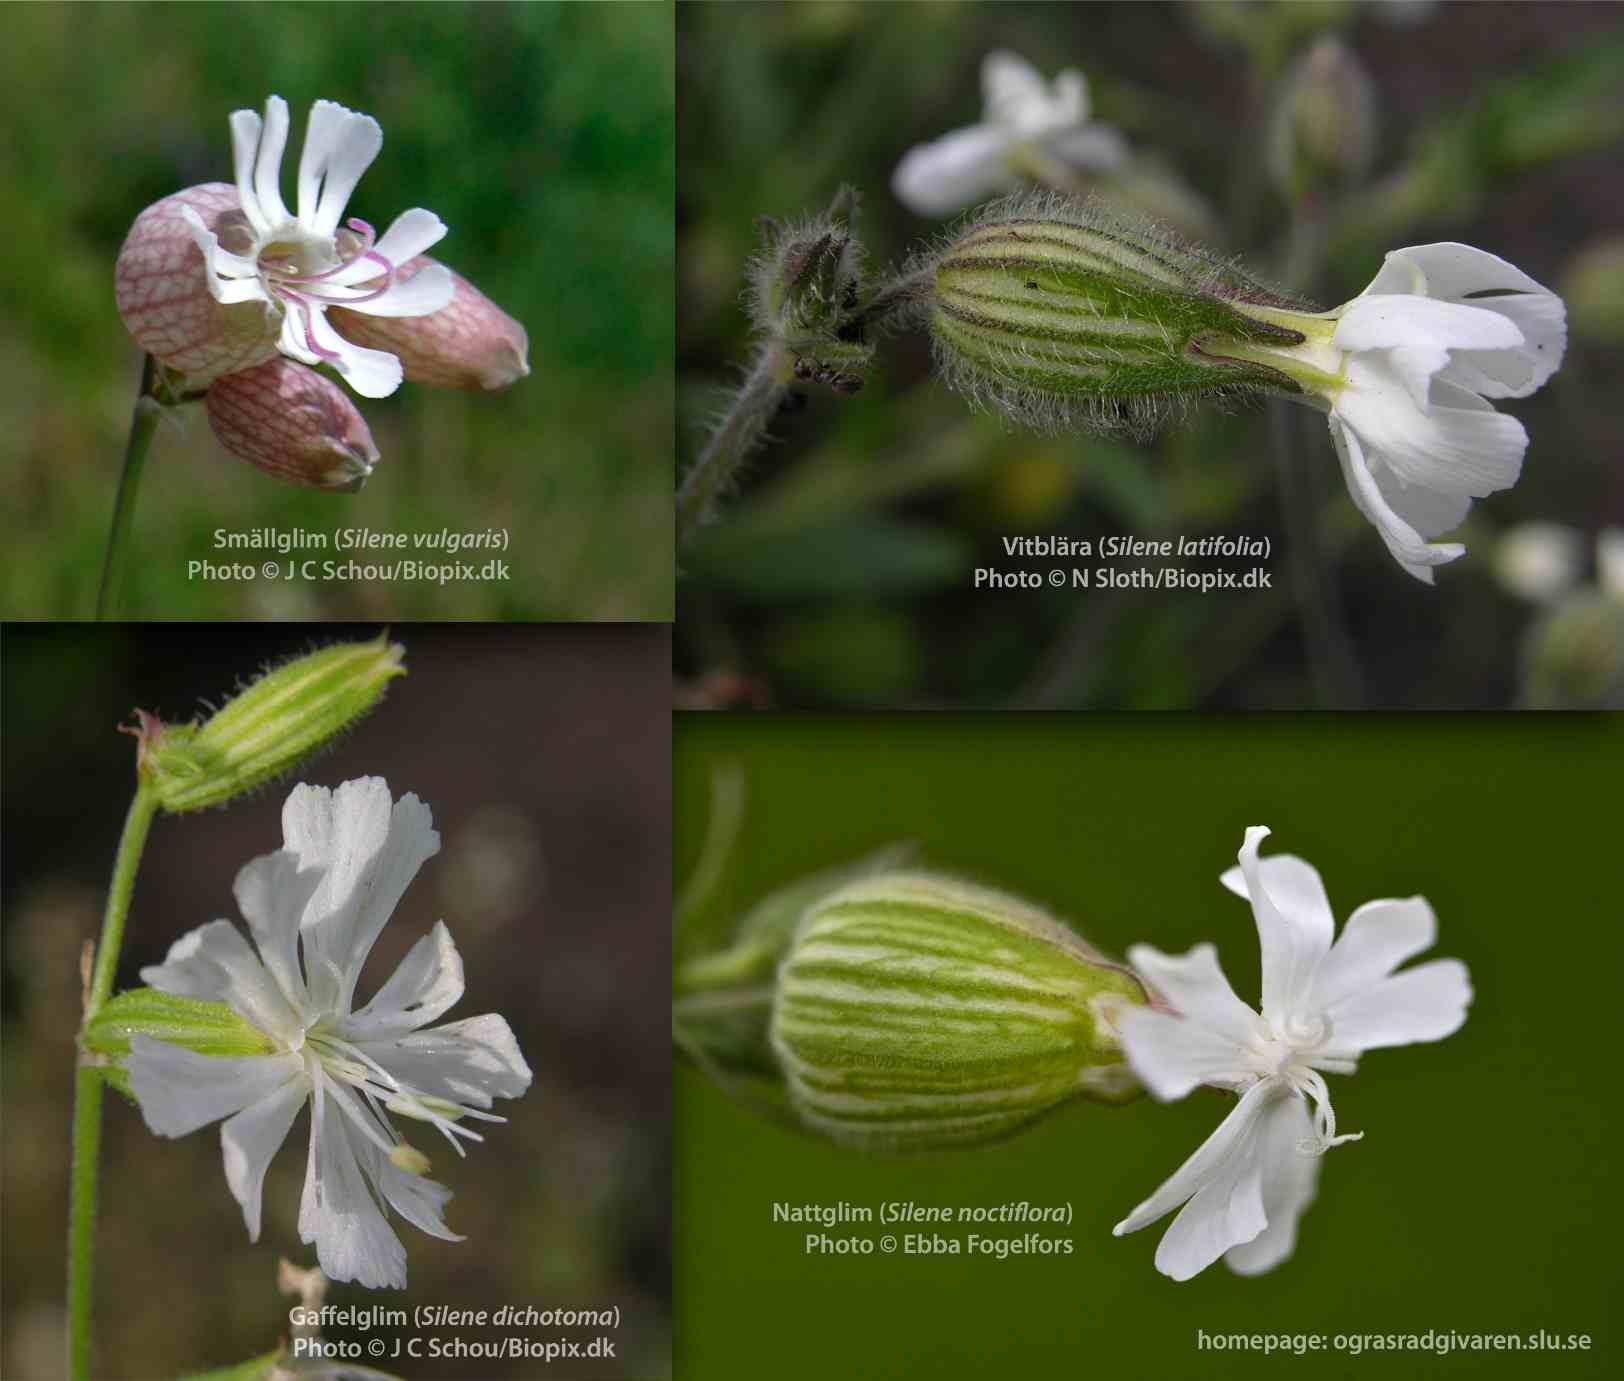 Jämförelse av foder och blommor: smällglim (S. vulgaris); vitblära (S. latifolia); gaffelglim (S. dichotoma); nattglim (S. noctiflora).